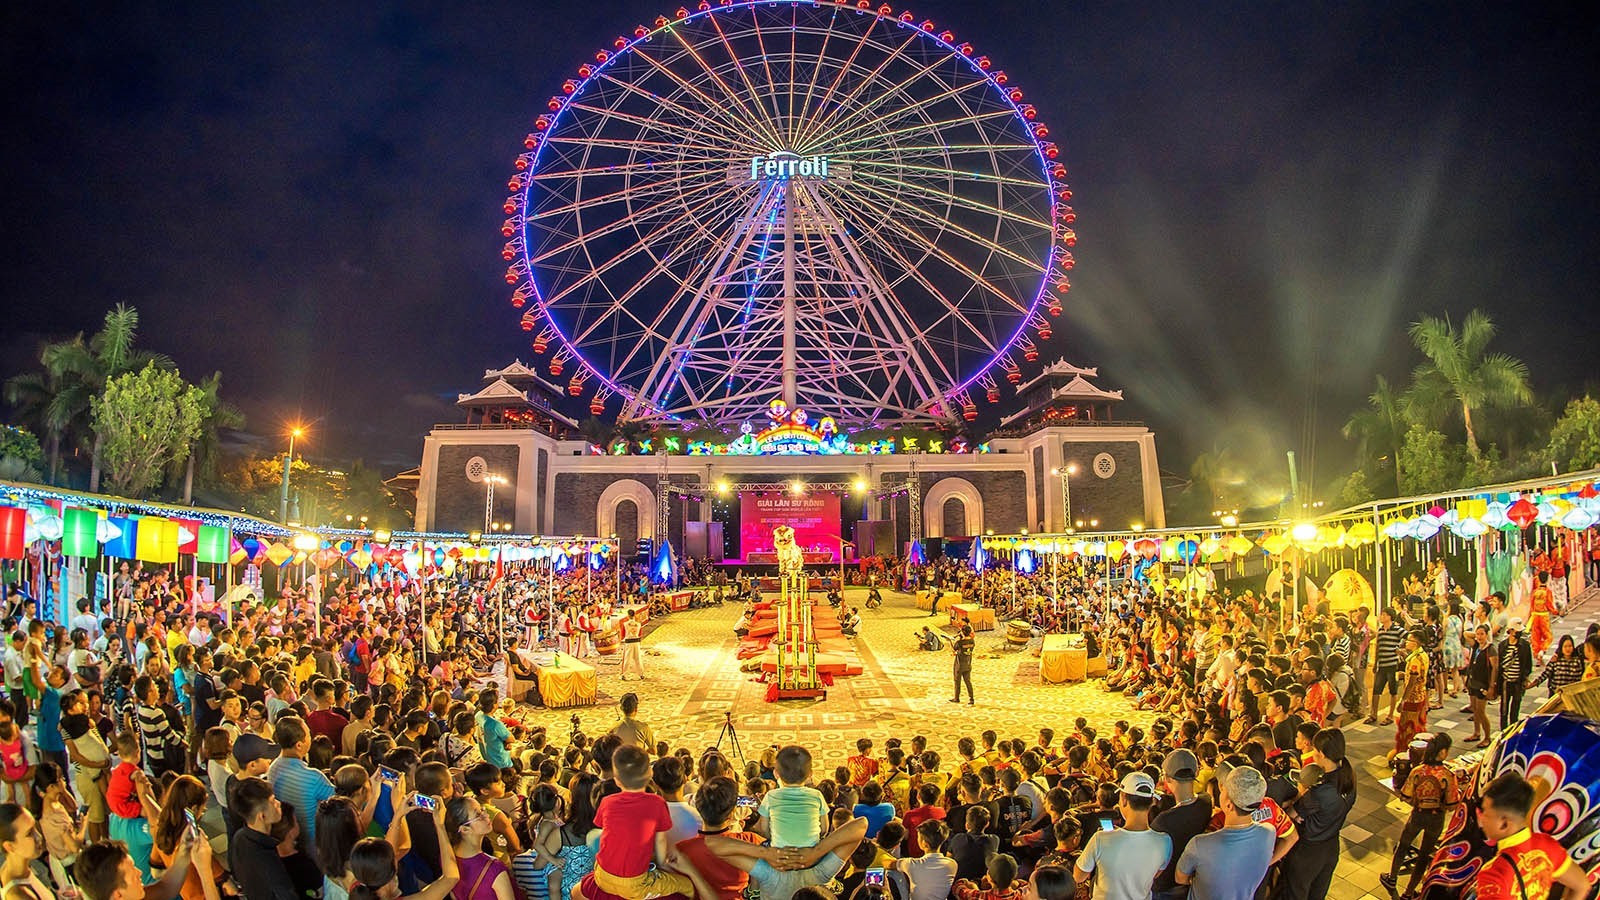 Quảng trường Công viên châu Á - địa điểm sẽ diễn ra chương trình khai mạc hoành tráng Lễ hội “Đà Nẵng -Chào năm mới 2021“. Ảnh QL